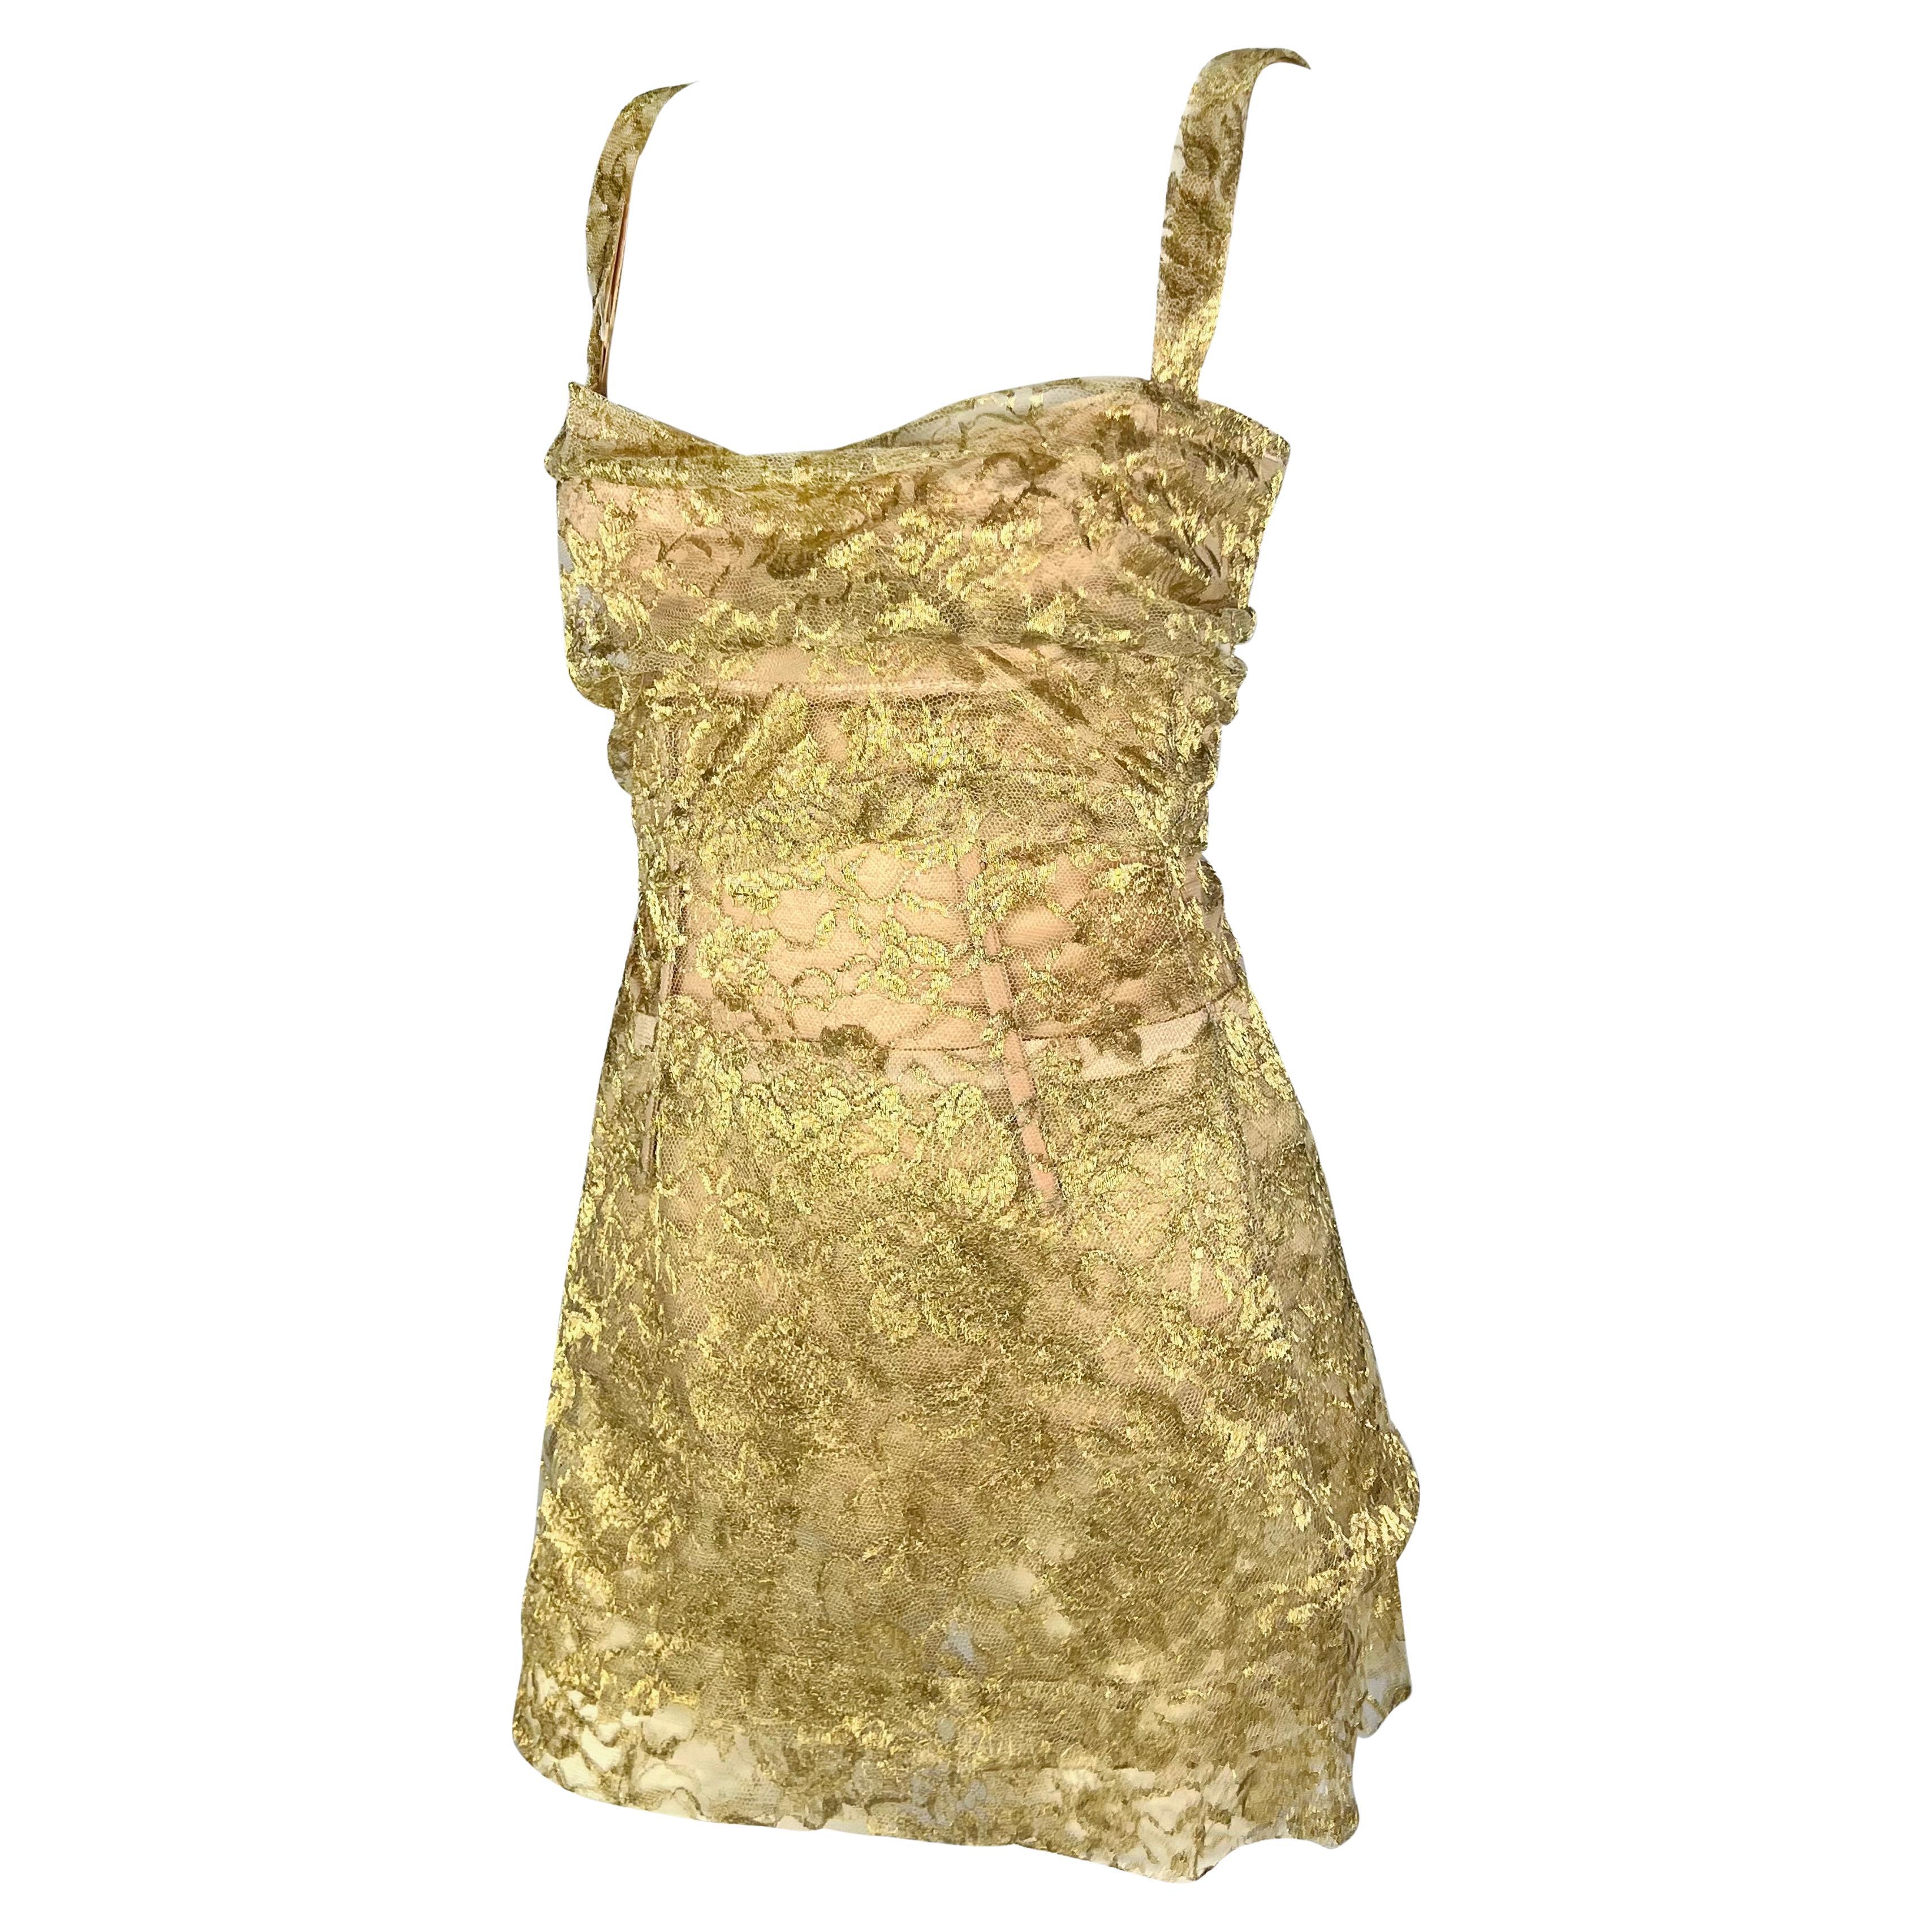 Dans la collection Automne/Hiver 1996, les bodys enveloppés de tissu, comme cette robe Dolce & Gabbana recouverte de dentelle dorée, ont fait leur apparition sur les podiums de la saison. Cette robe est la tenue de soirée par excellence. Sa longueur